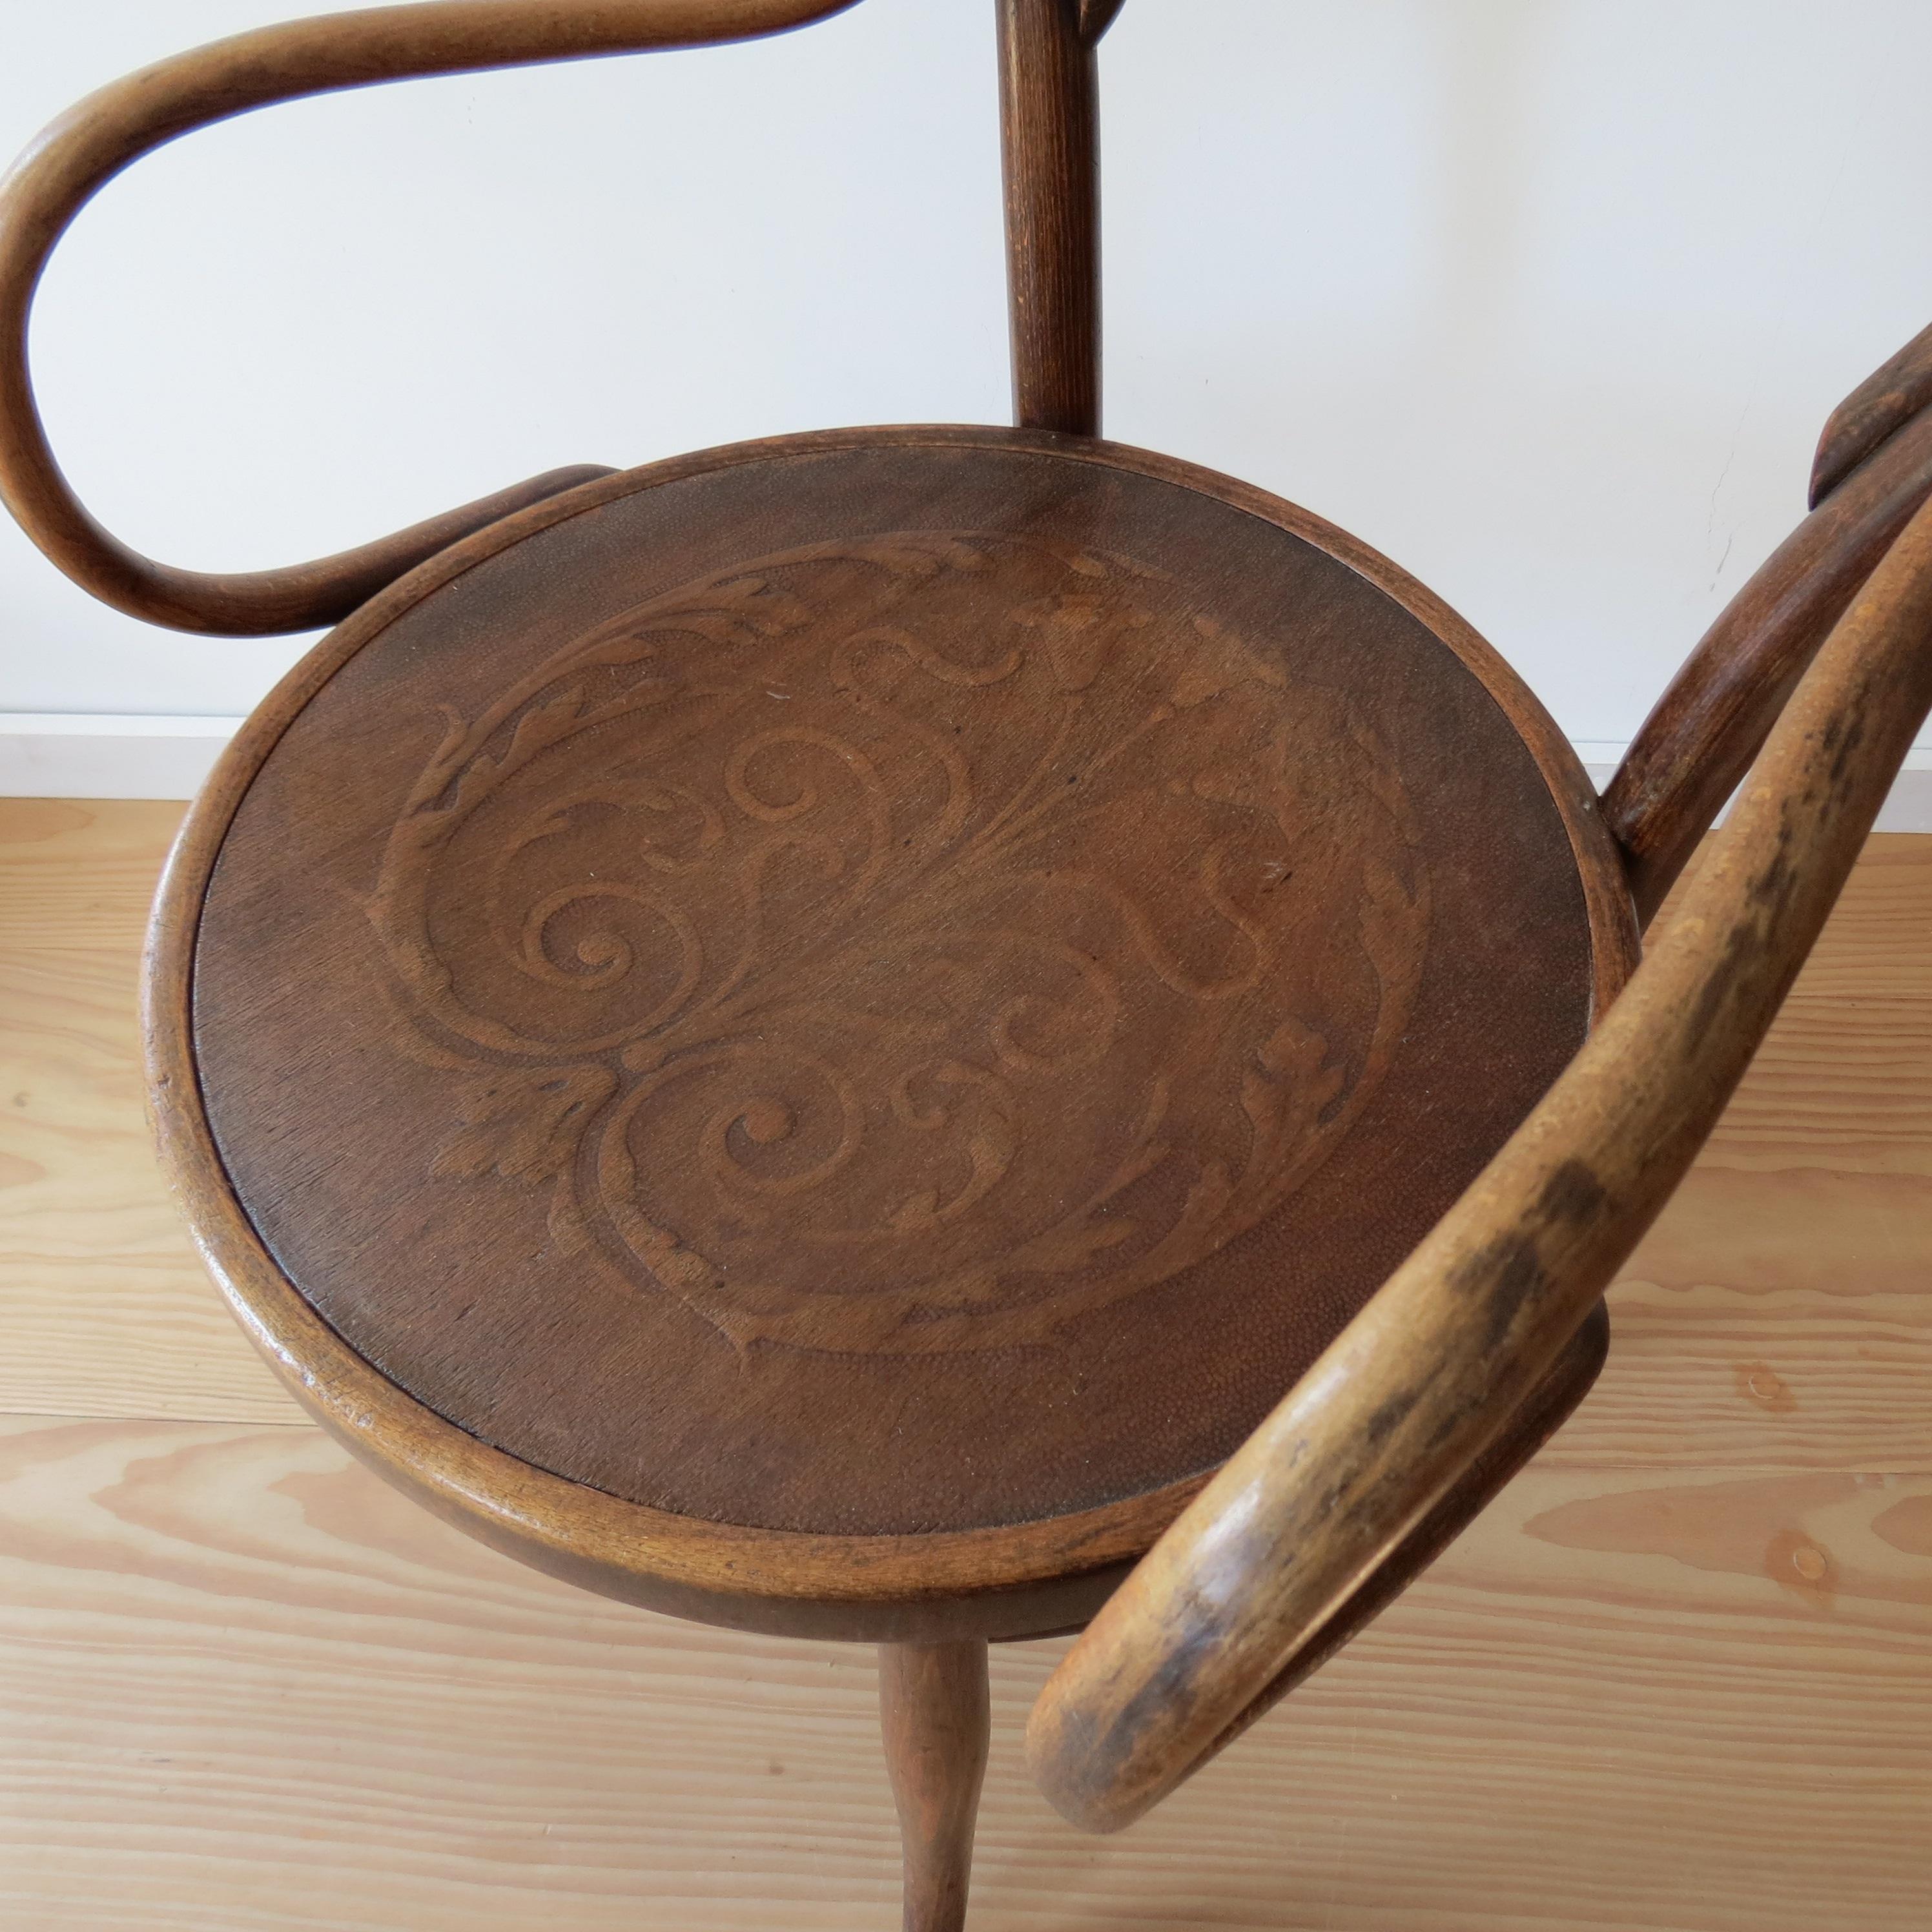 Antique Bentwood Chair No 14 by Thonet 19th Century Art Nouveau 3